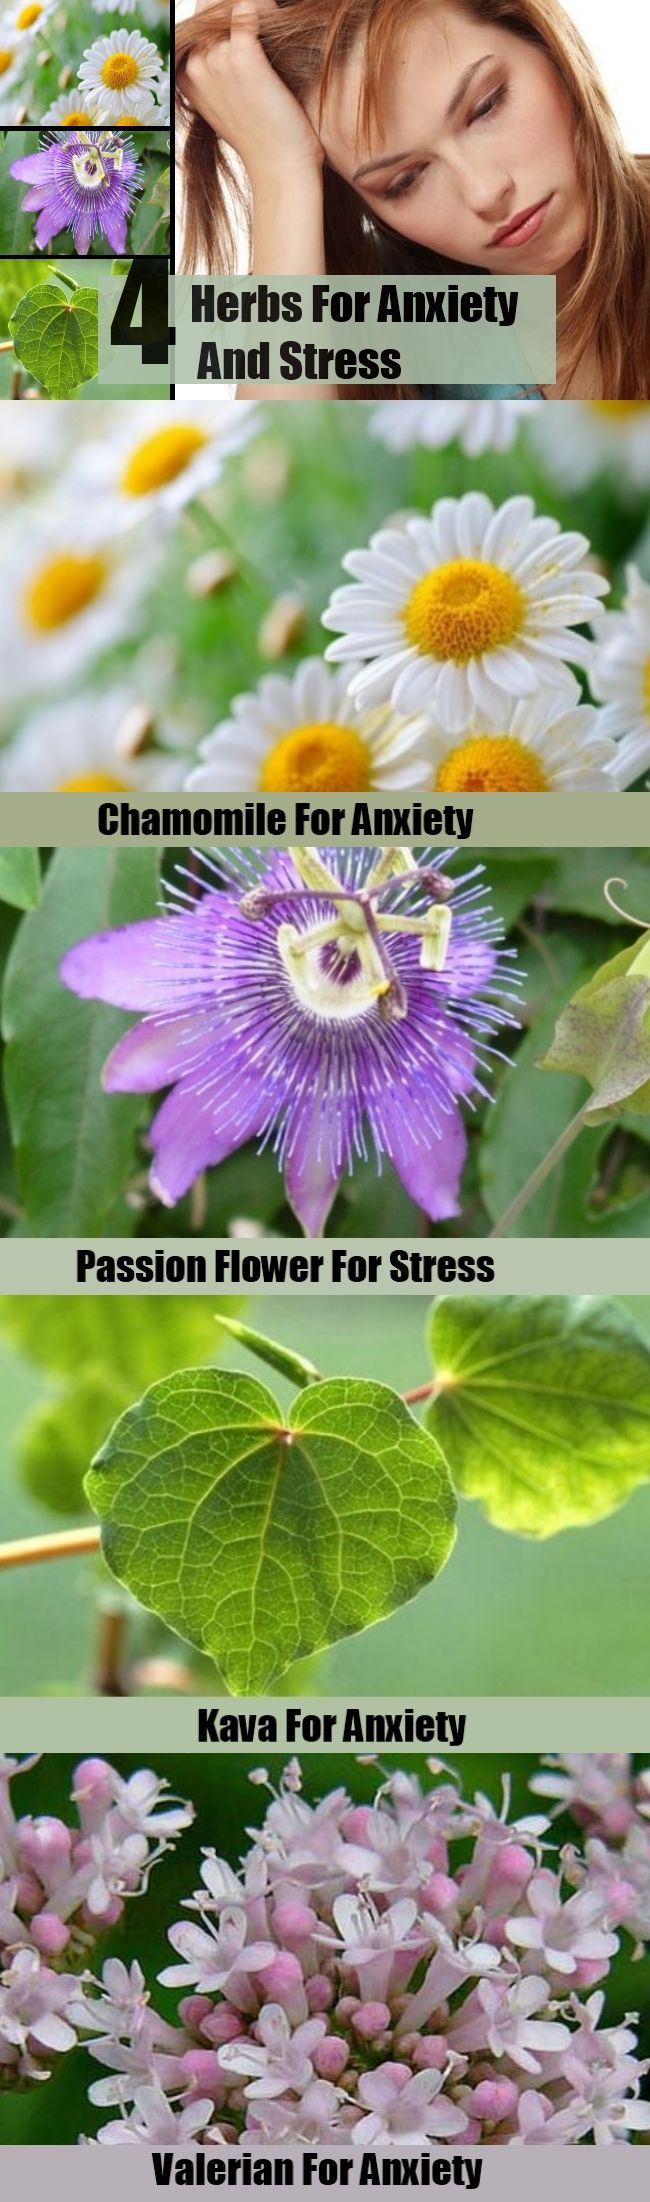 4 herbes pour l'anxiété et le stress